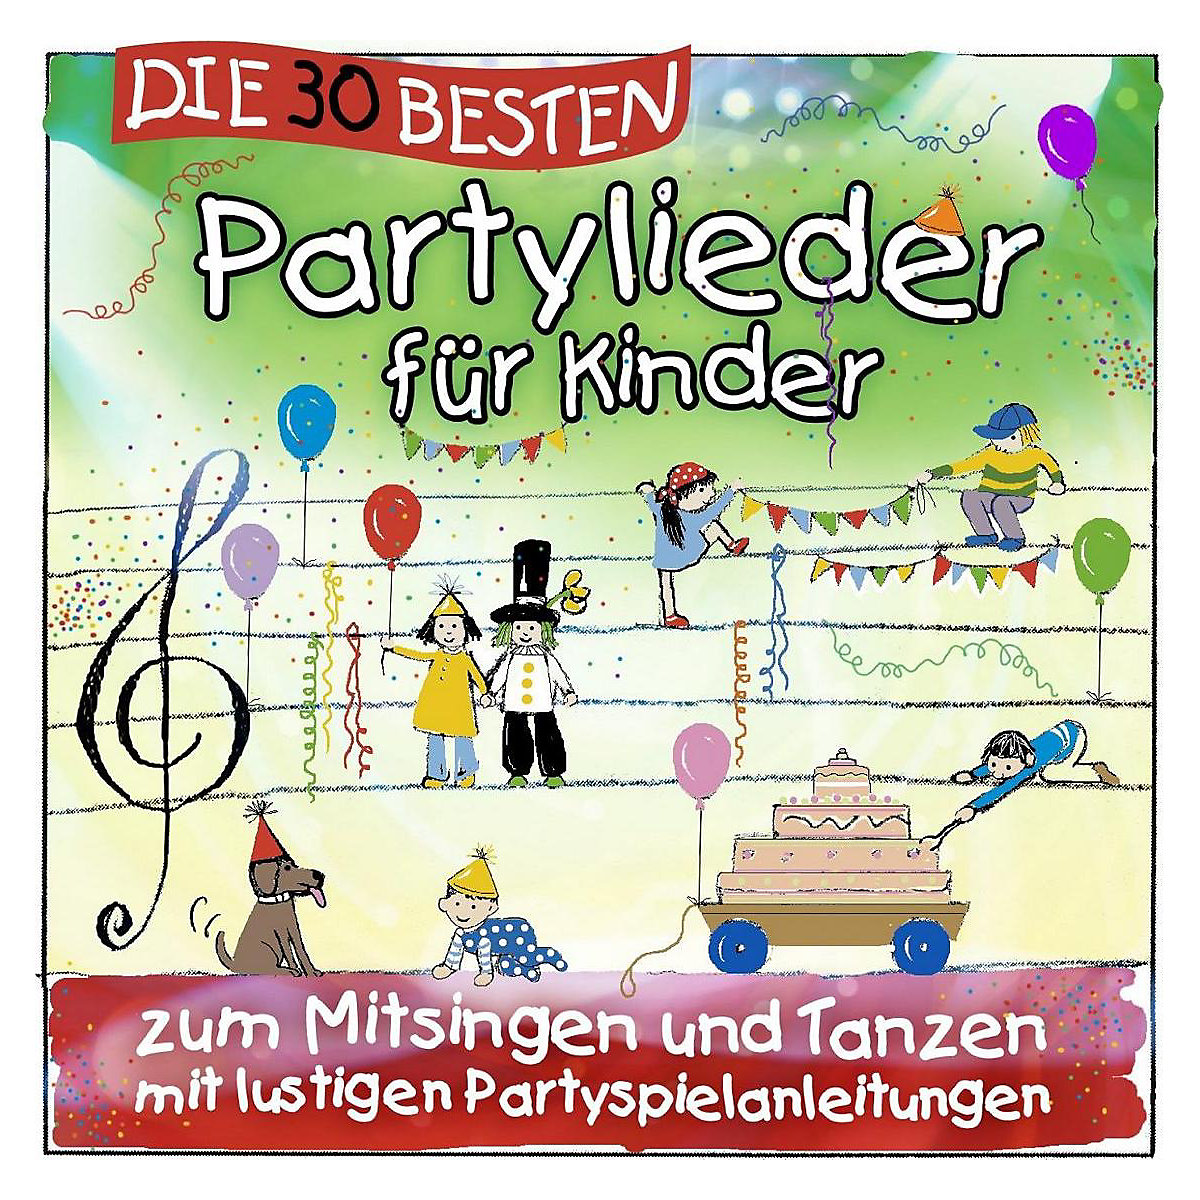 Universal CD Die 30 besten Partylieder für Kinder